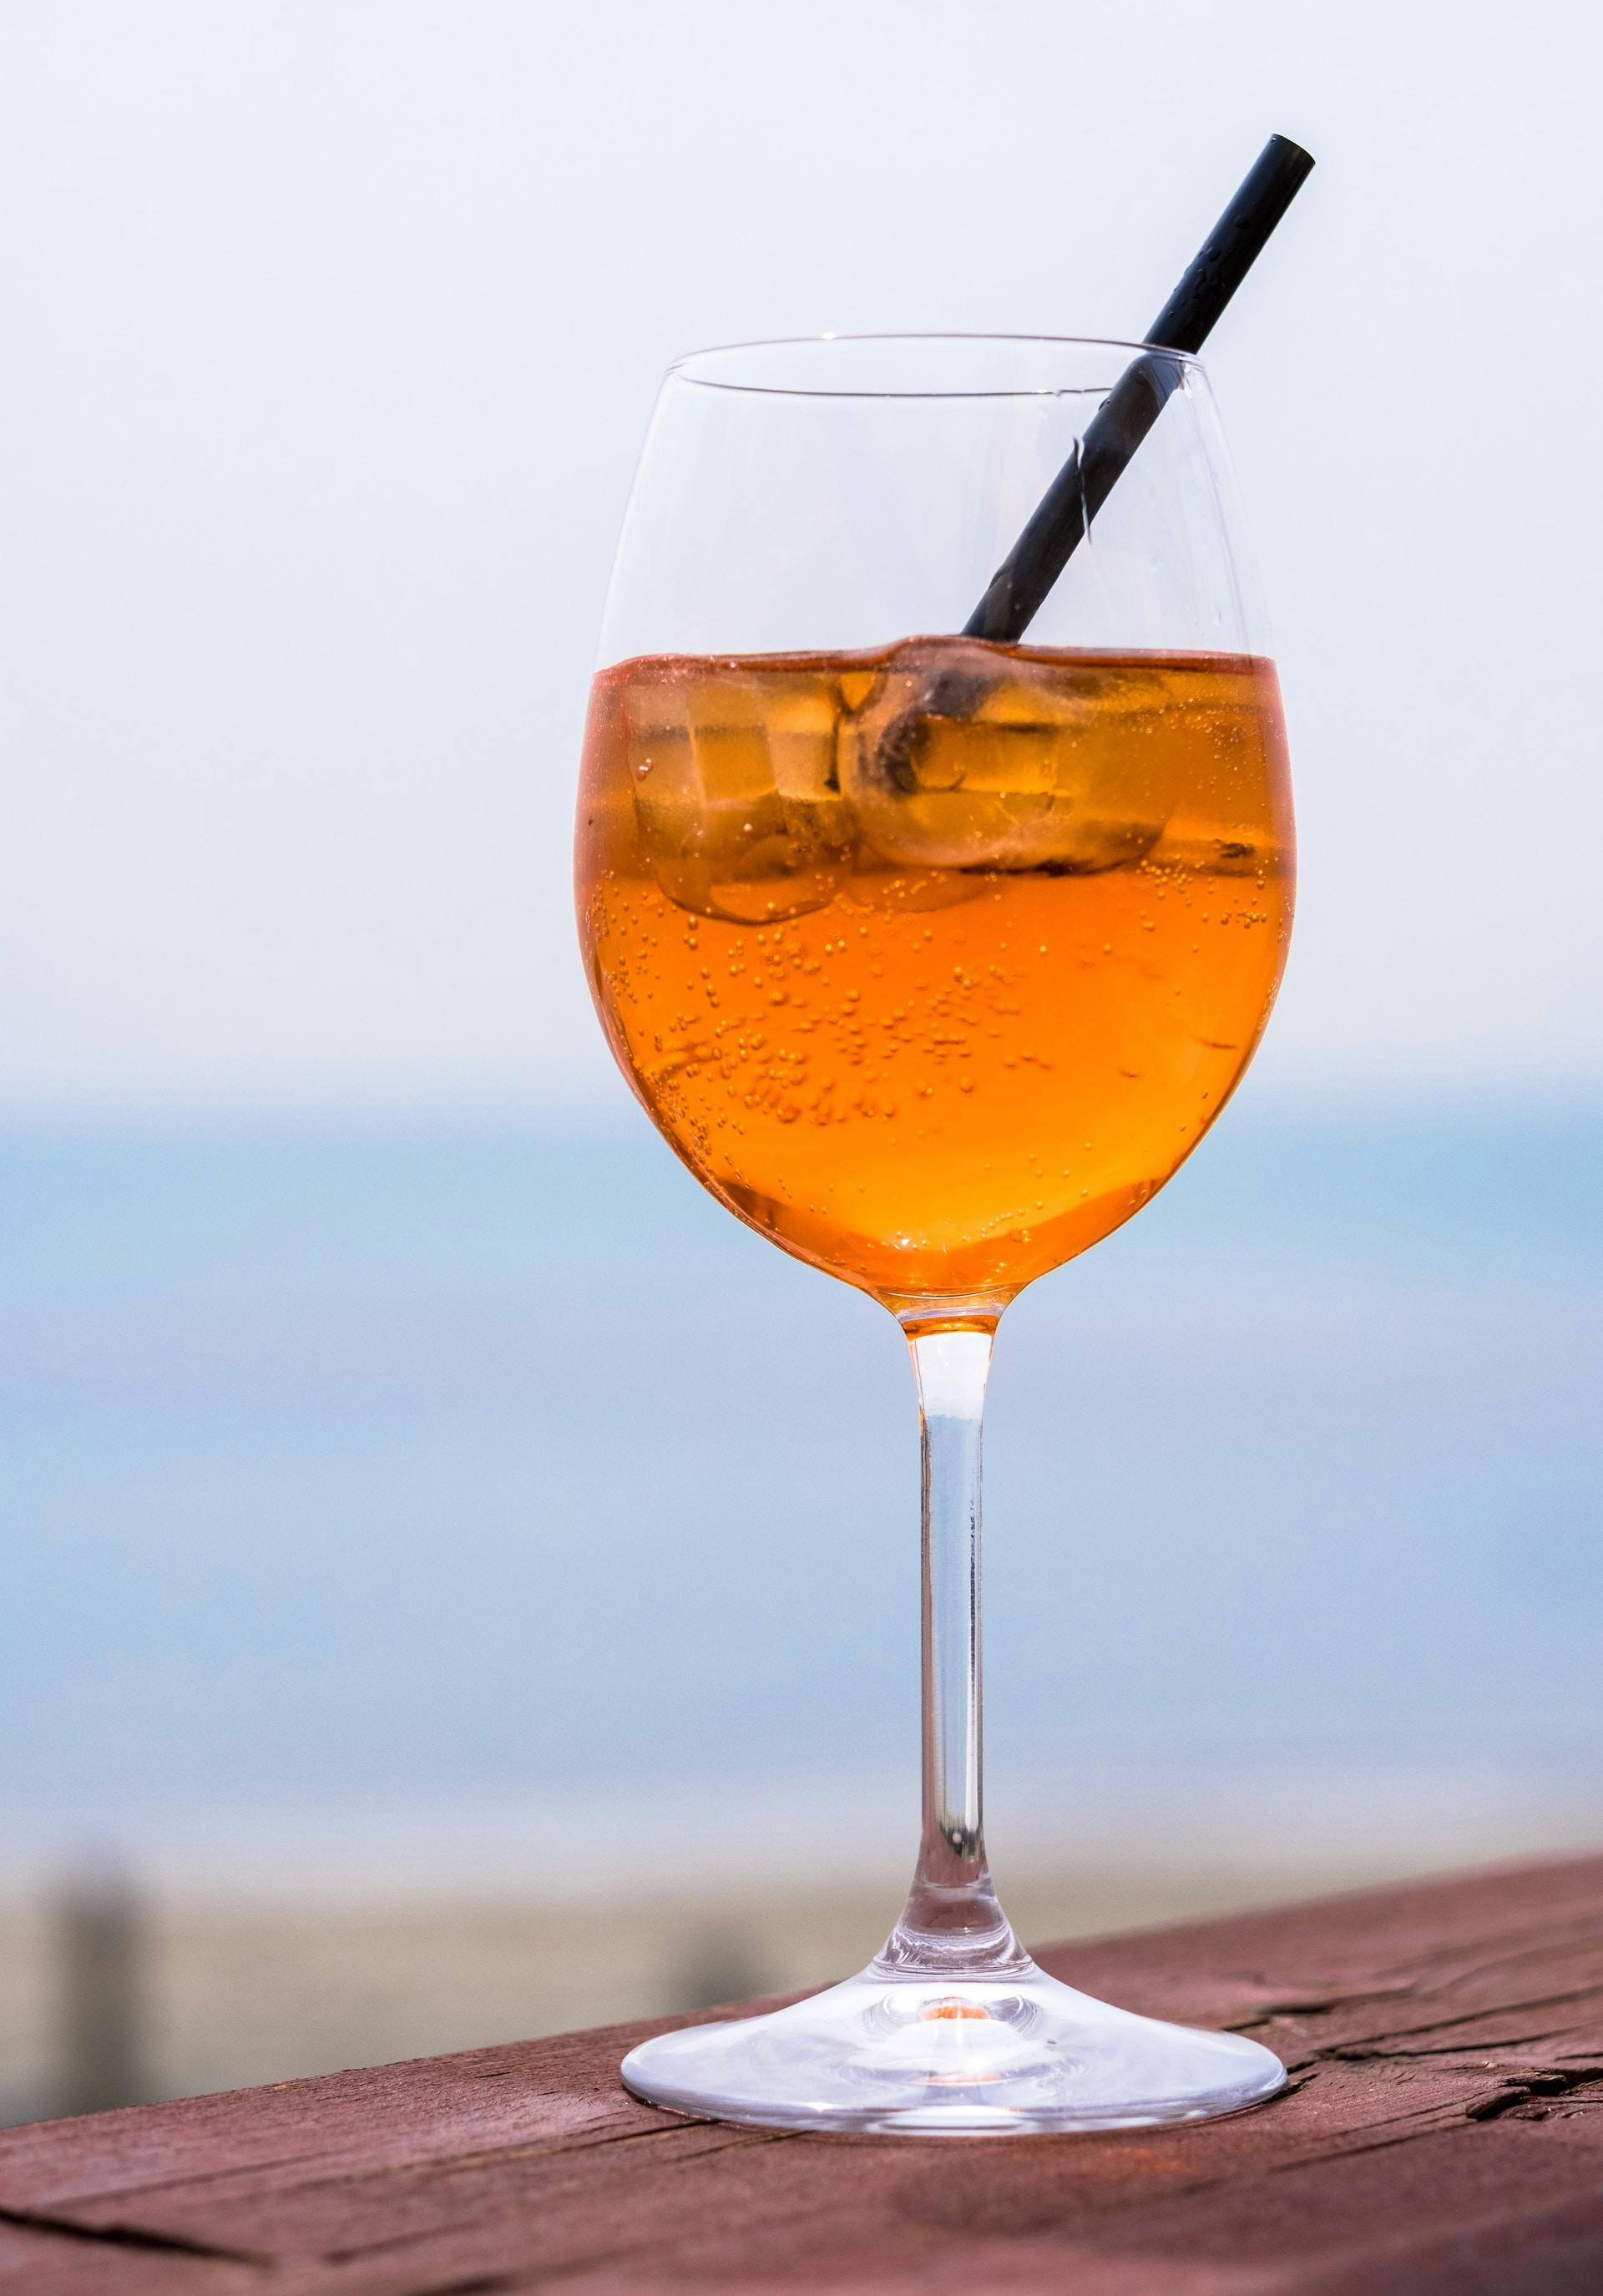 Weinglas mit orangefarbene Flüssigkeit und Strohhalm auf Holztisch